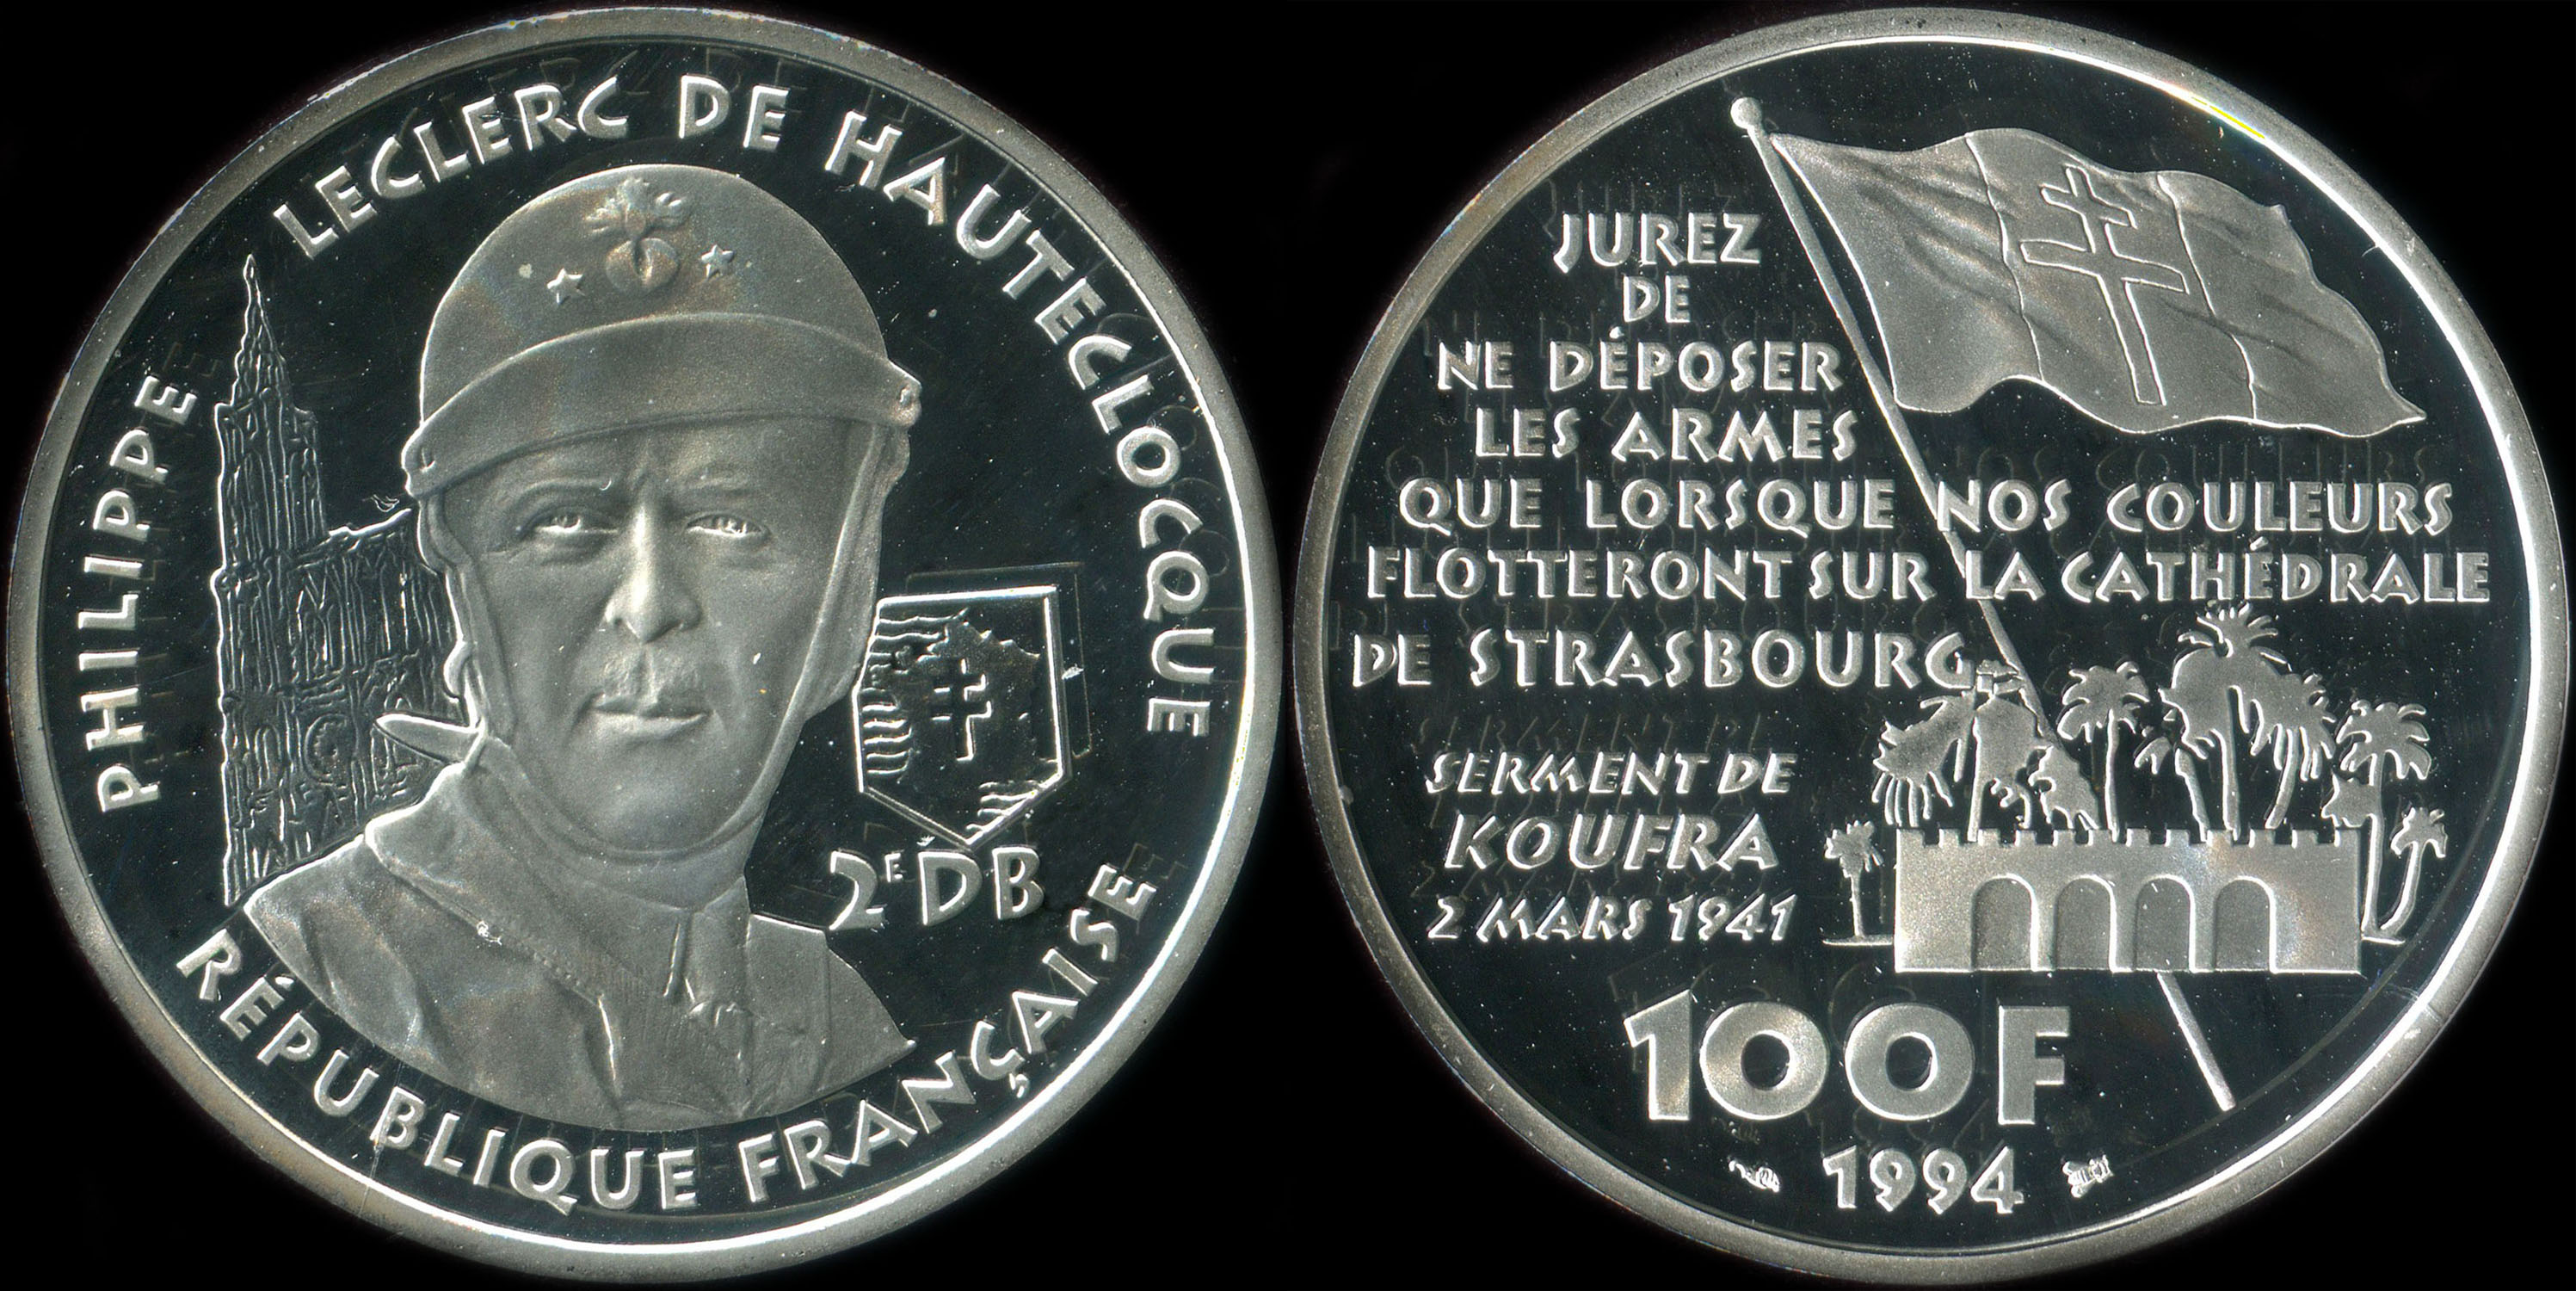 Pice de 100 francs 1994 - La Libert retrouve - Philippe Leclerc de Hautecloque - Serment de Koufra 2 mars 1941